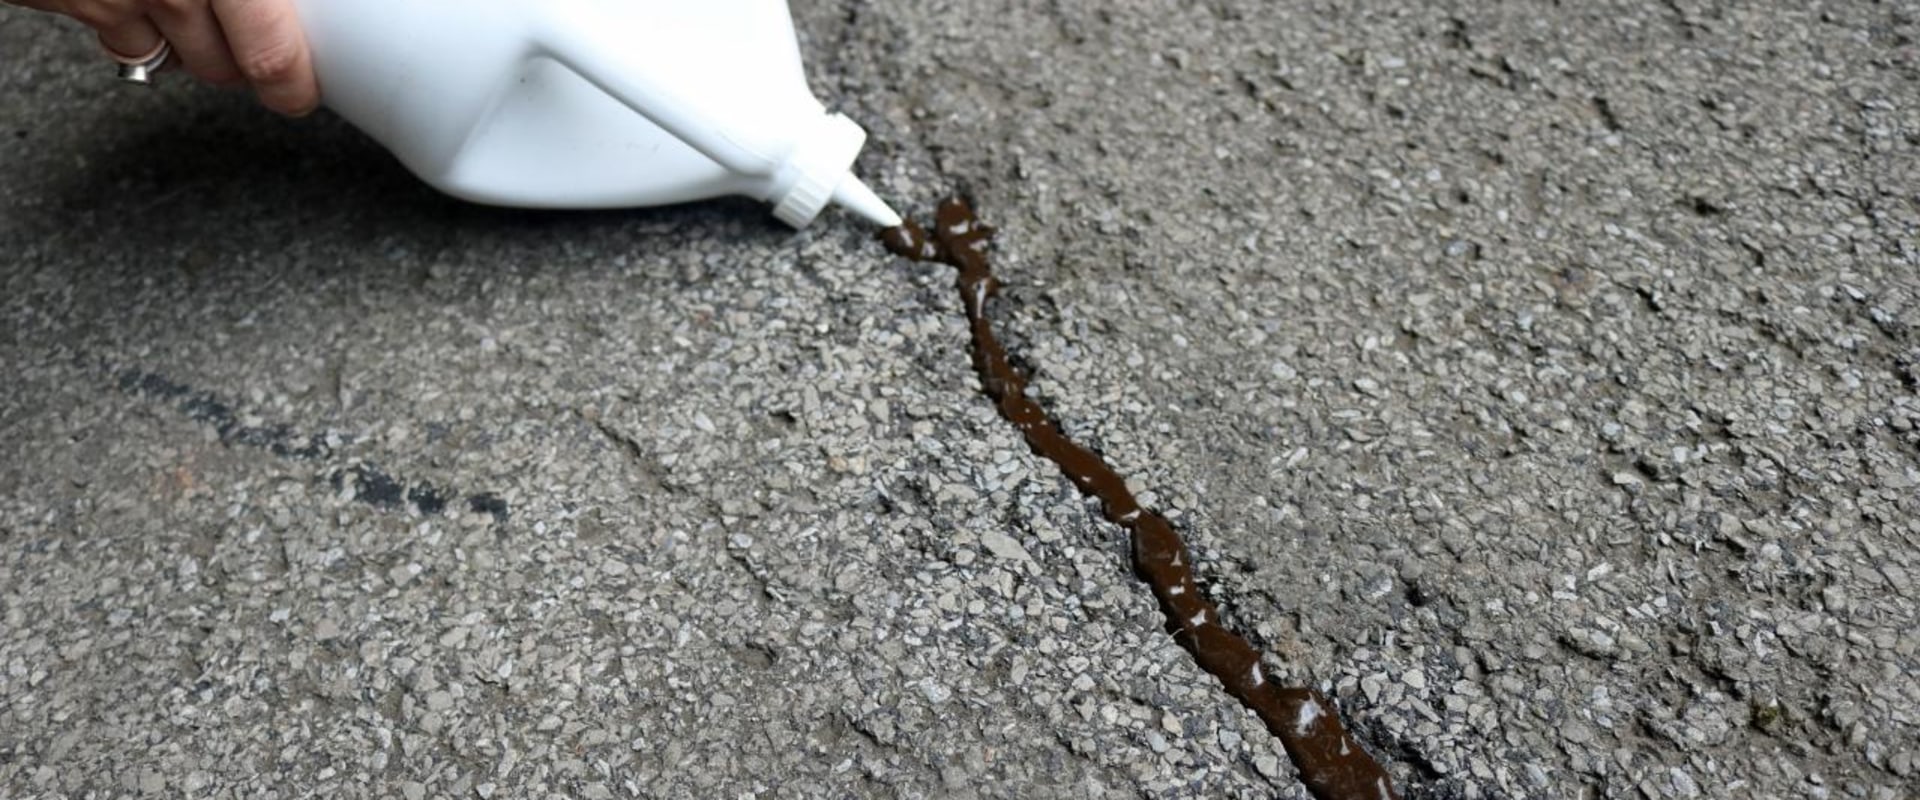 Should you repair driveway cracks?